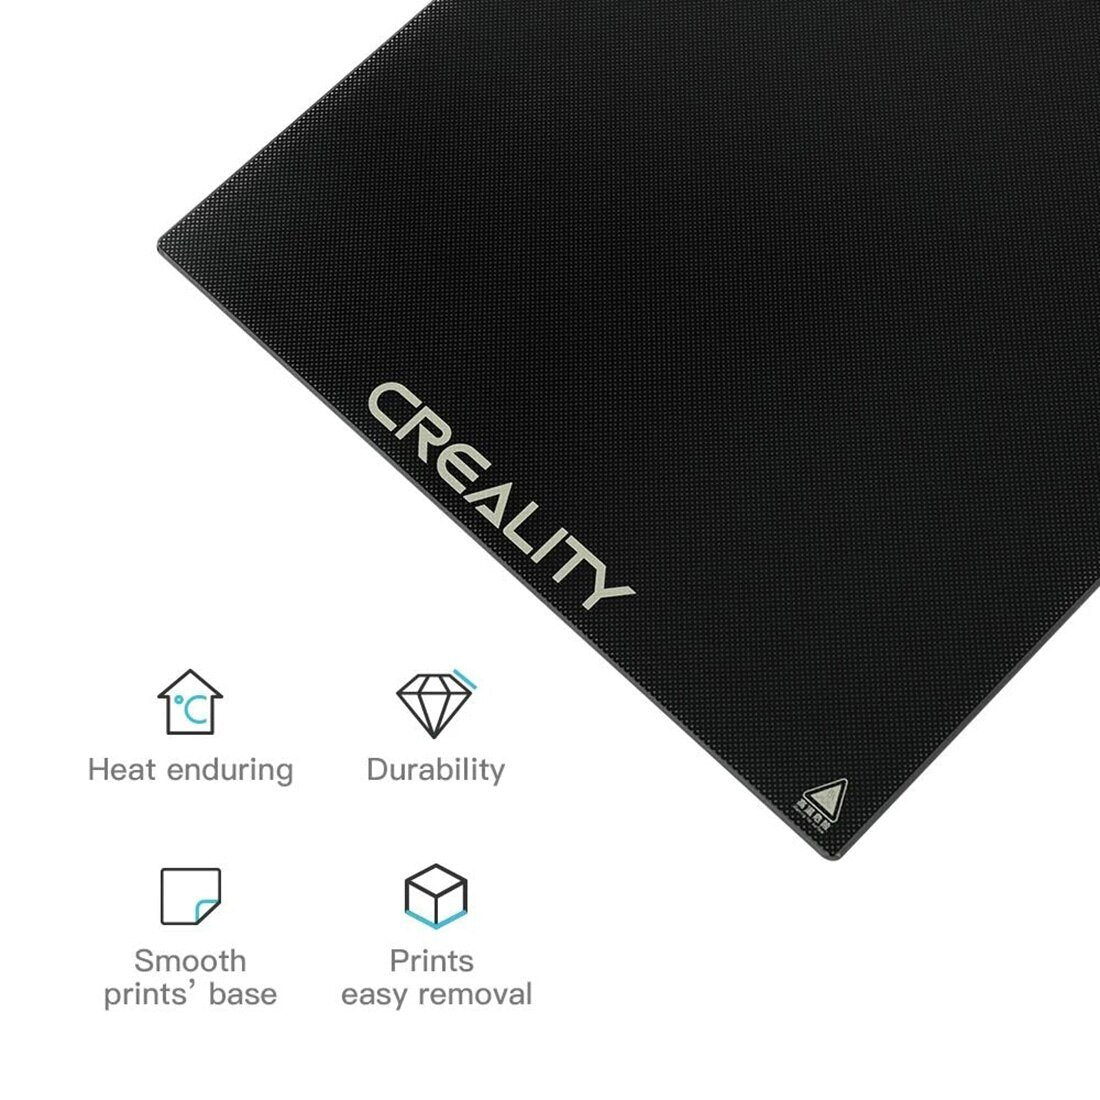 Creality 3D® Ender 6 Glass Bed (290 x 290mm) 3D Printer Carbon Crystal Glass Build Plate Platform for Ender-6